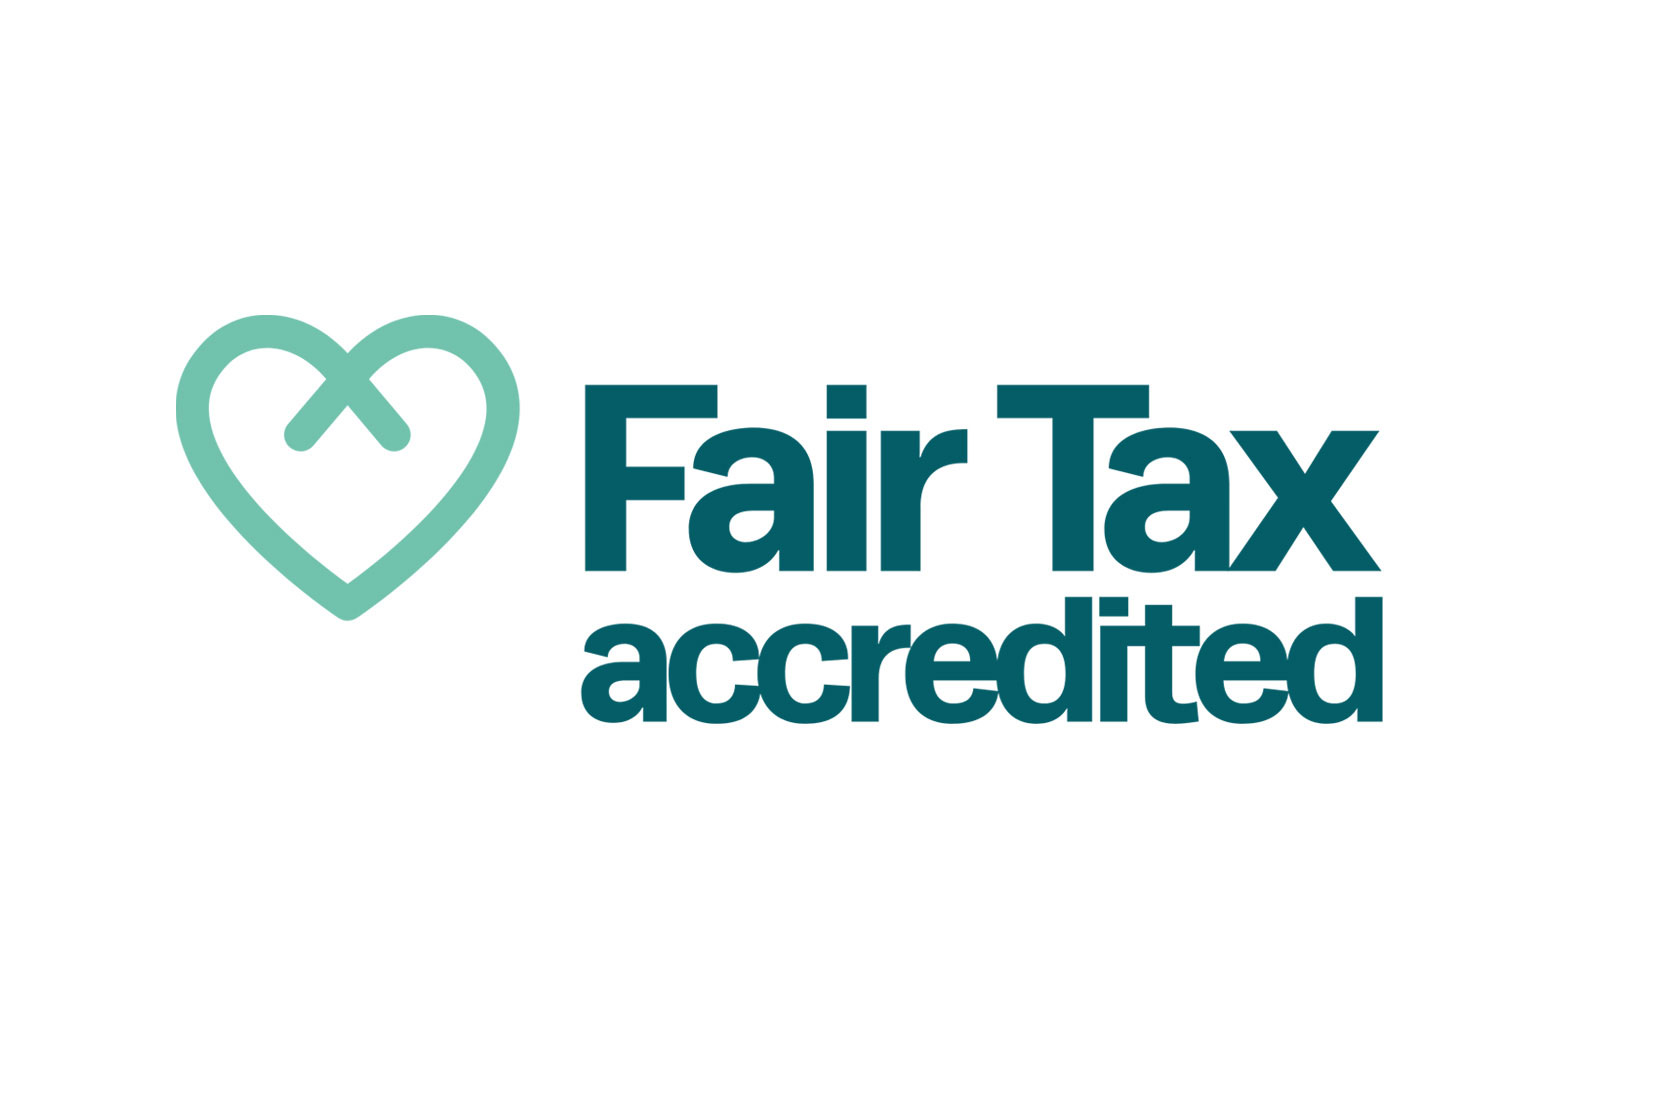 The Fair Tax logo